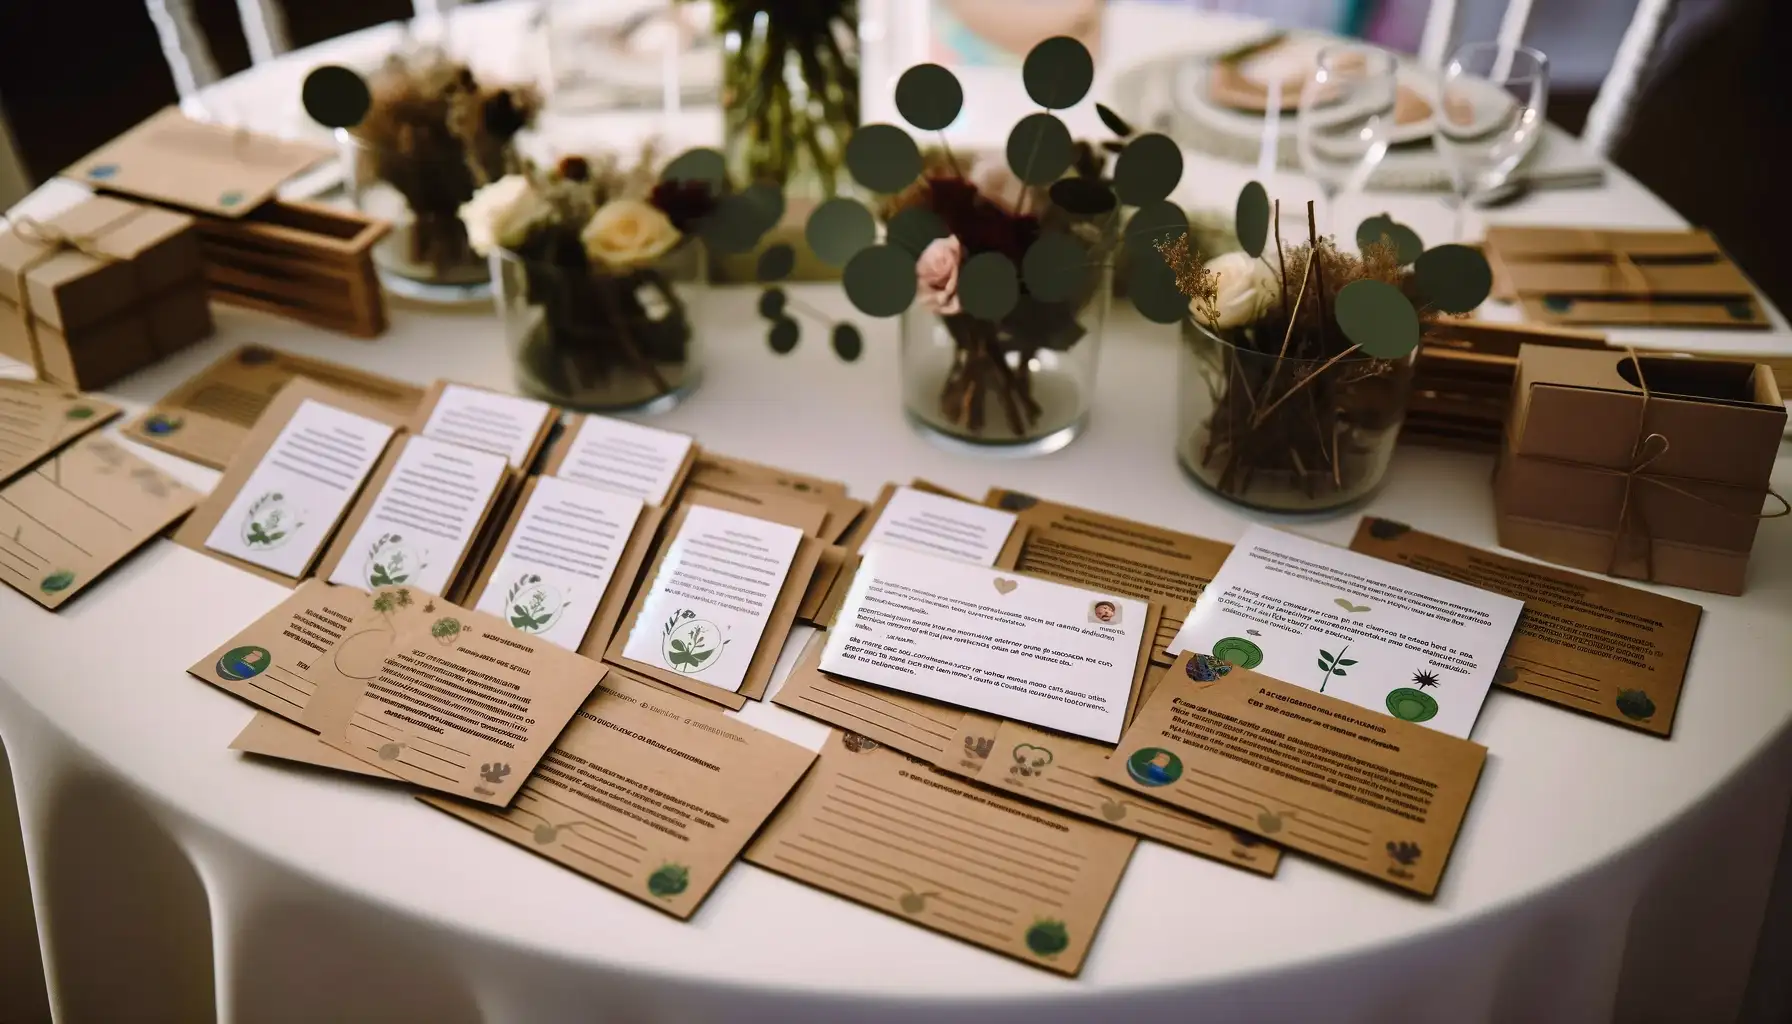 Mejor Una imagen horizontal que ilustre la idea de regalos solidarios en una boda con un enfoque en la sostenibilidad y el impacto social. La escena muestra